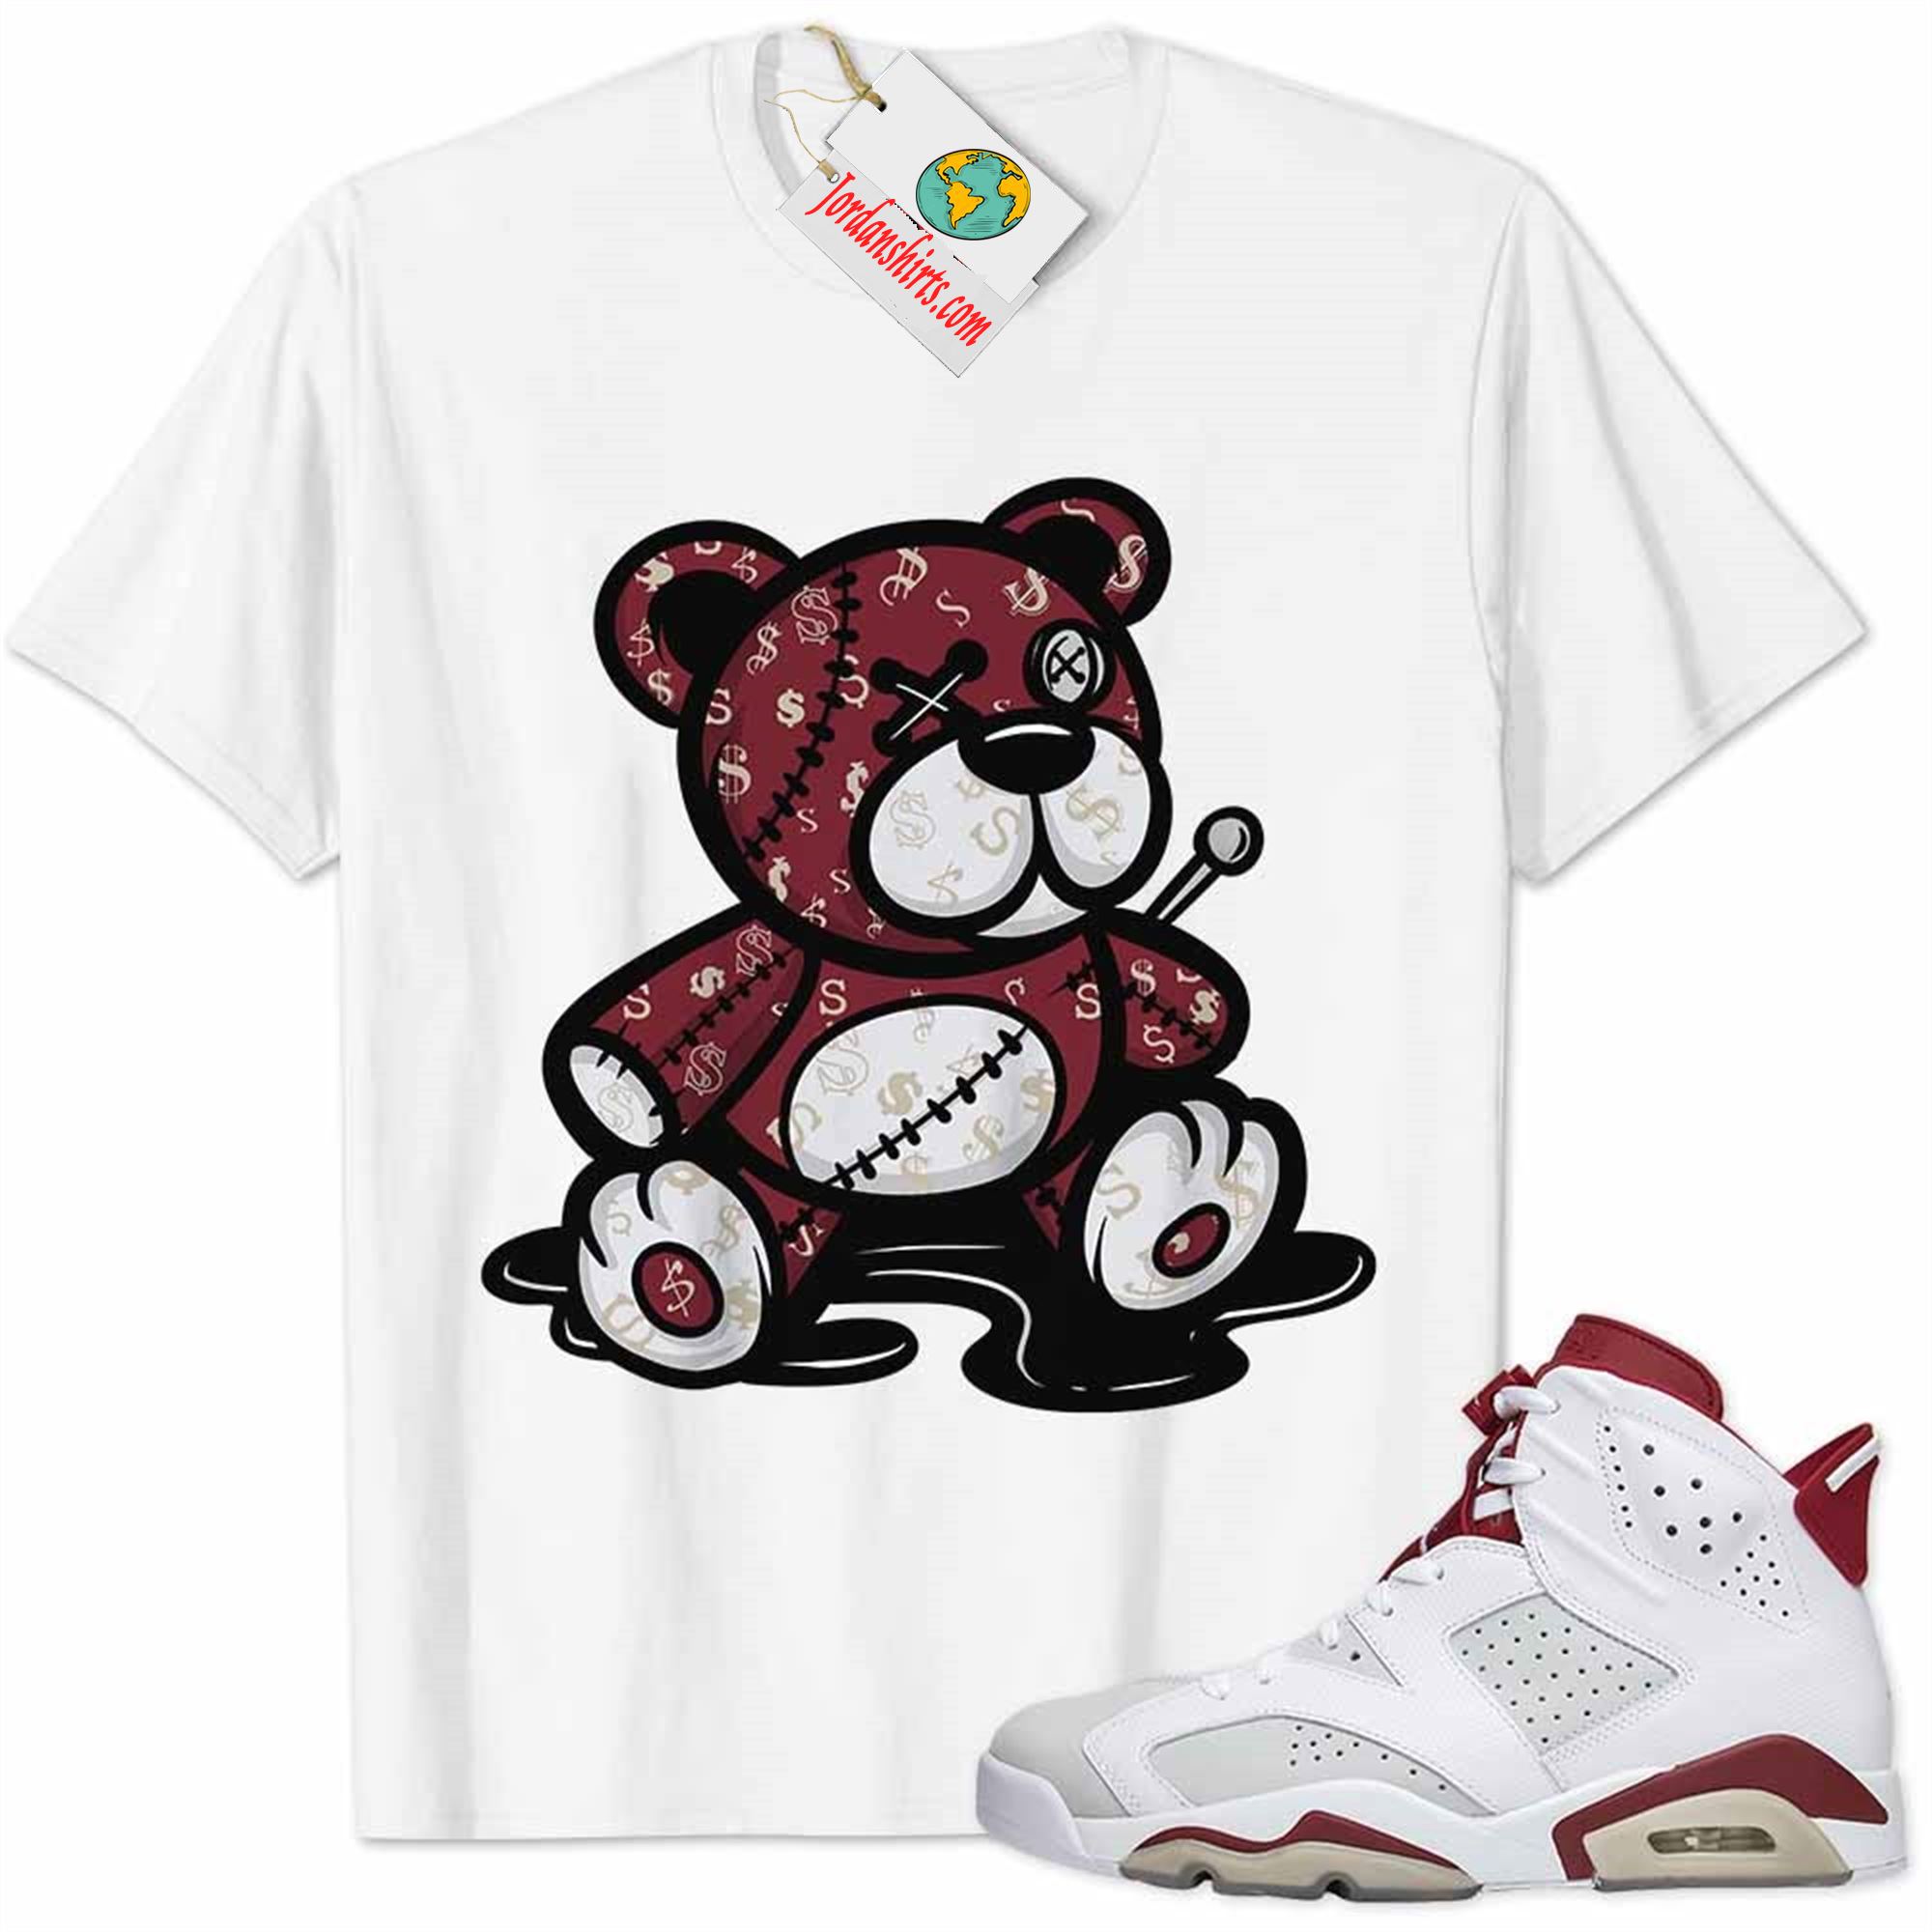 Jordan 6 Shirt, Jordan 6 Alternate Shirt Teddy Bear All Money In White Full Size Up To 5xl